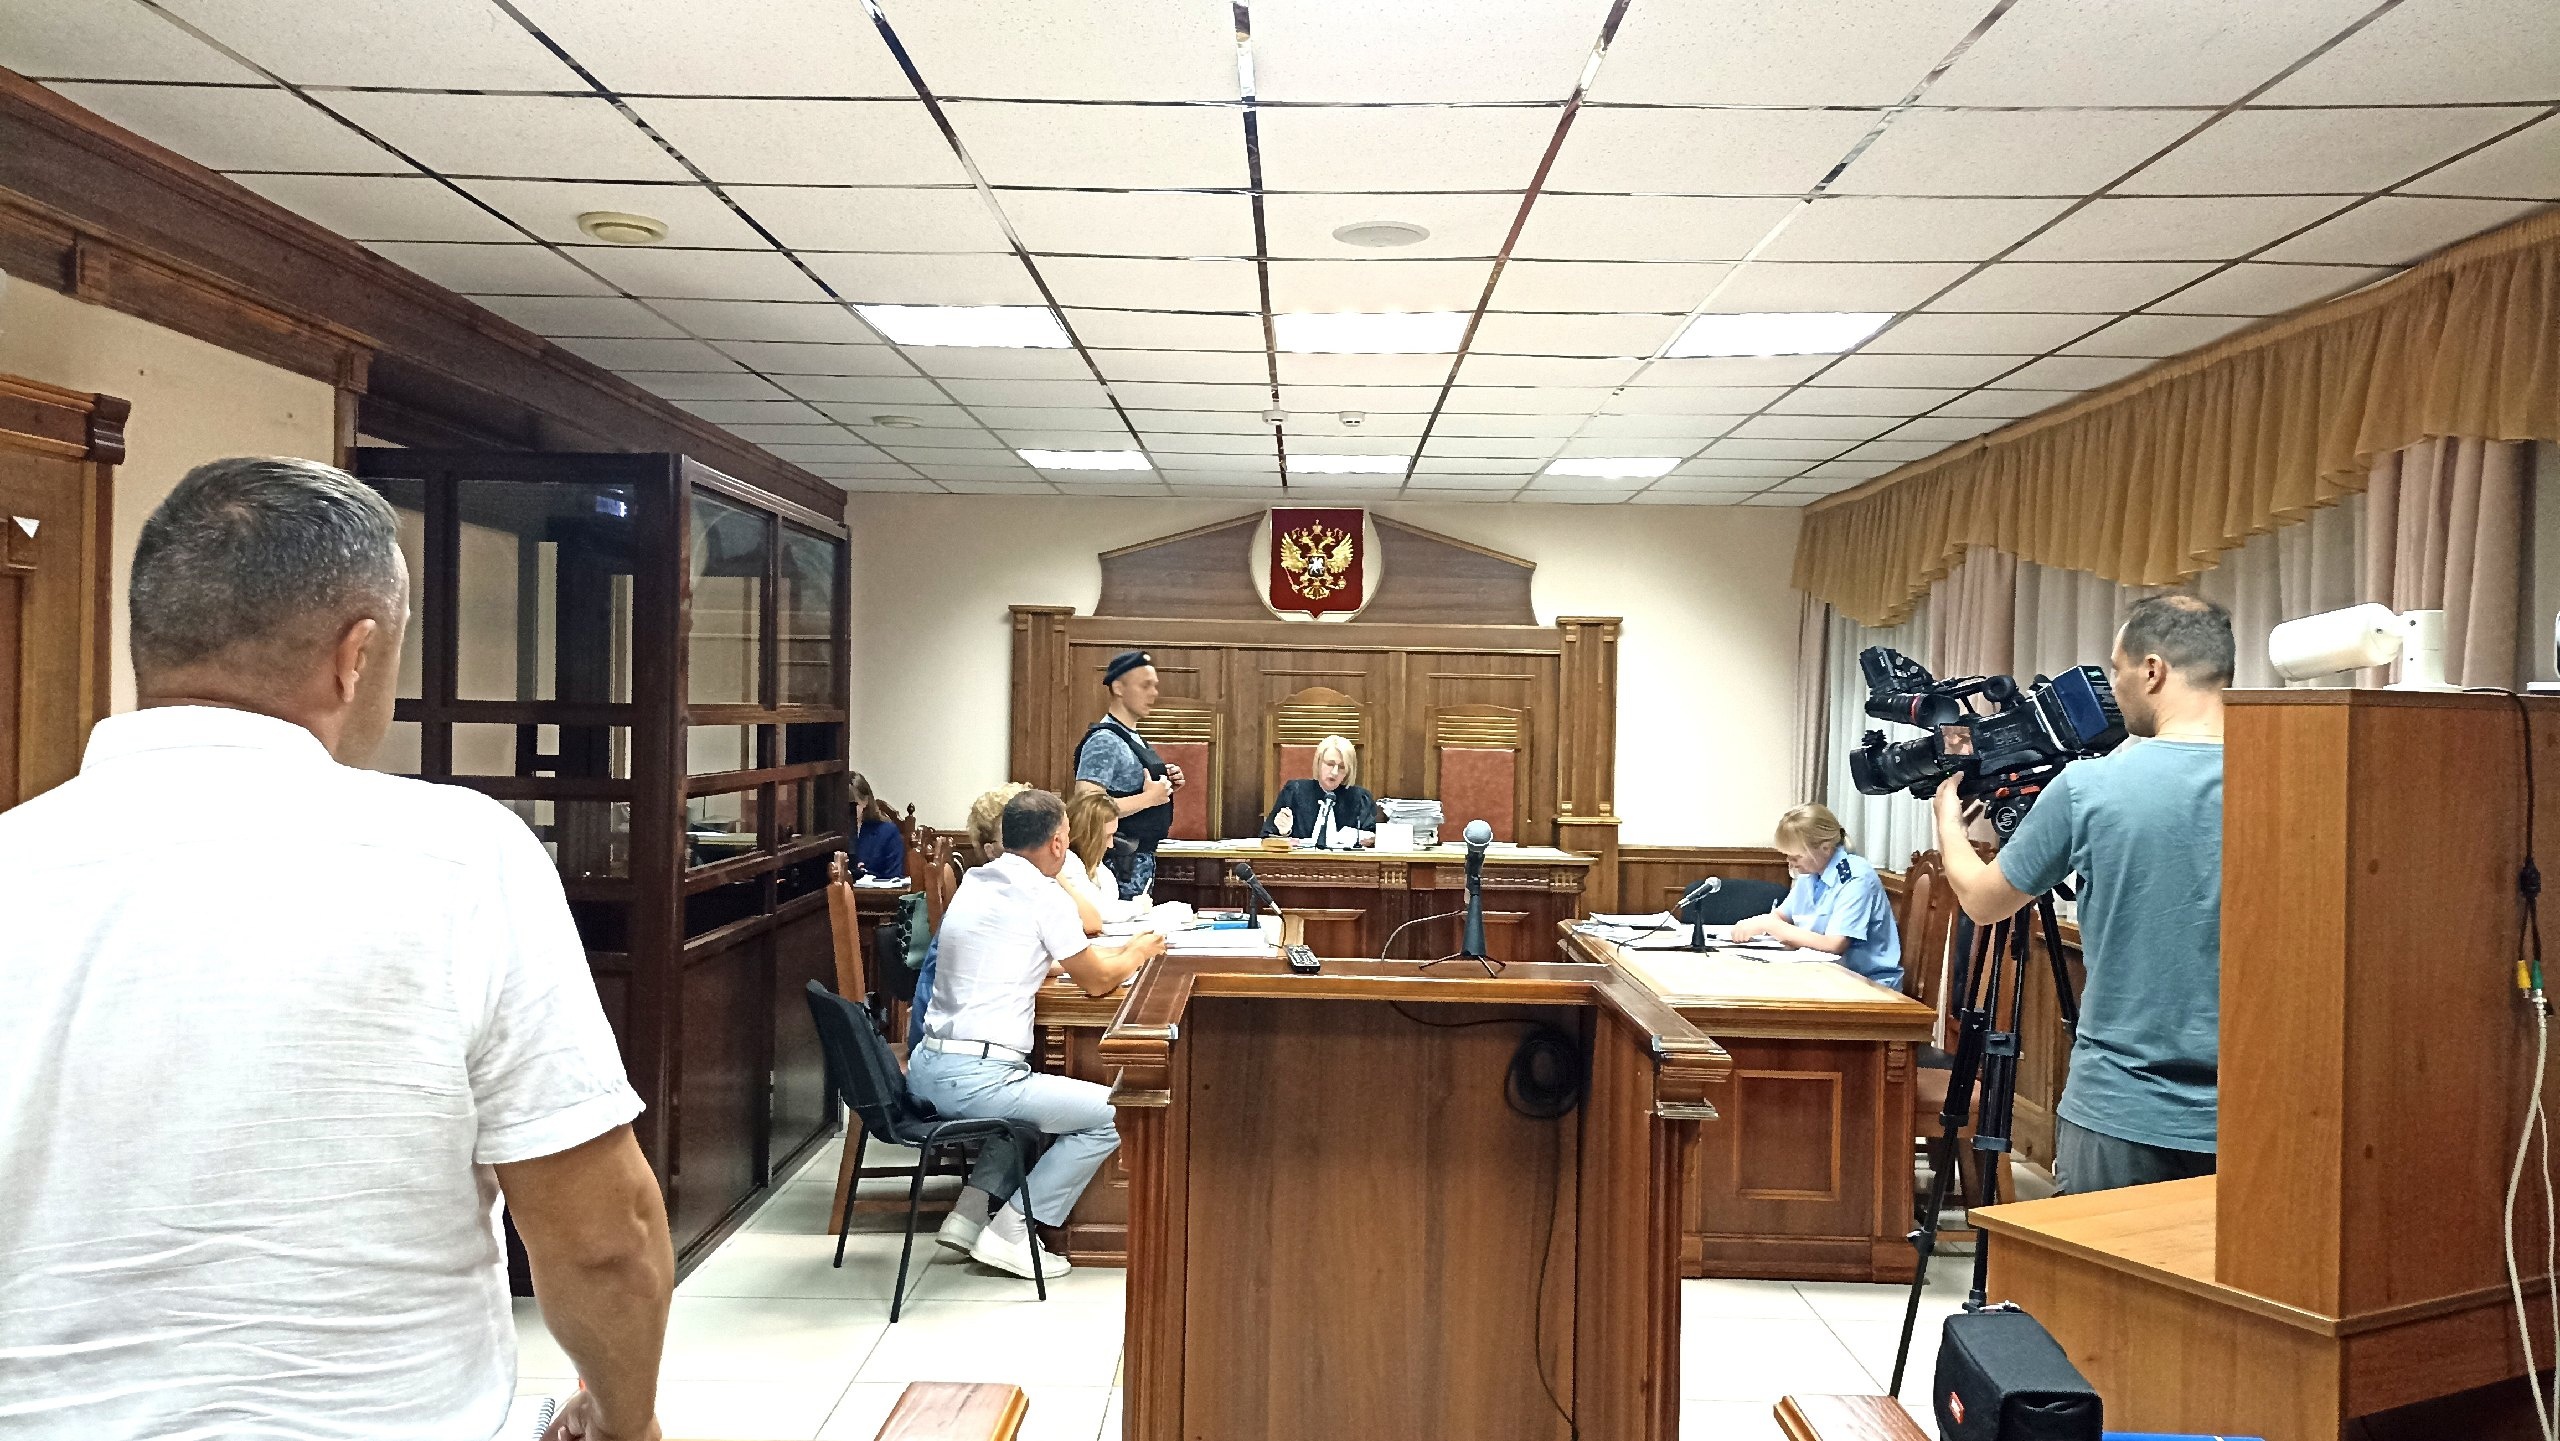 Областной суд рассматривает апелляцию на приговор по гибели осужденной в колонии Кинешмы